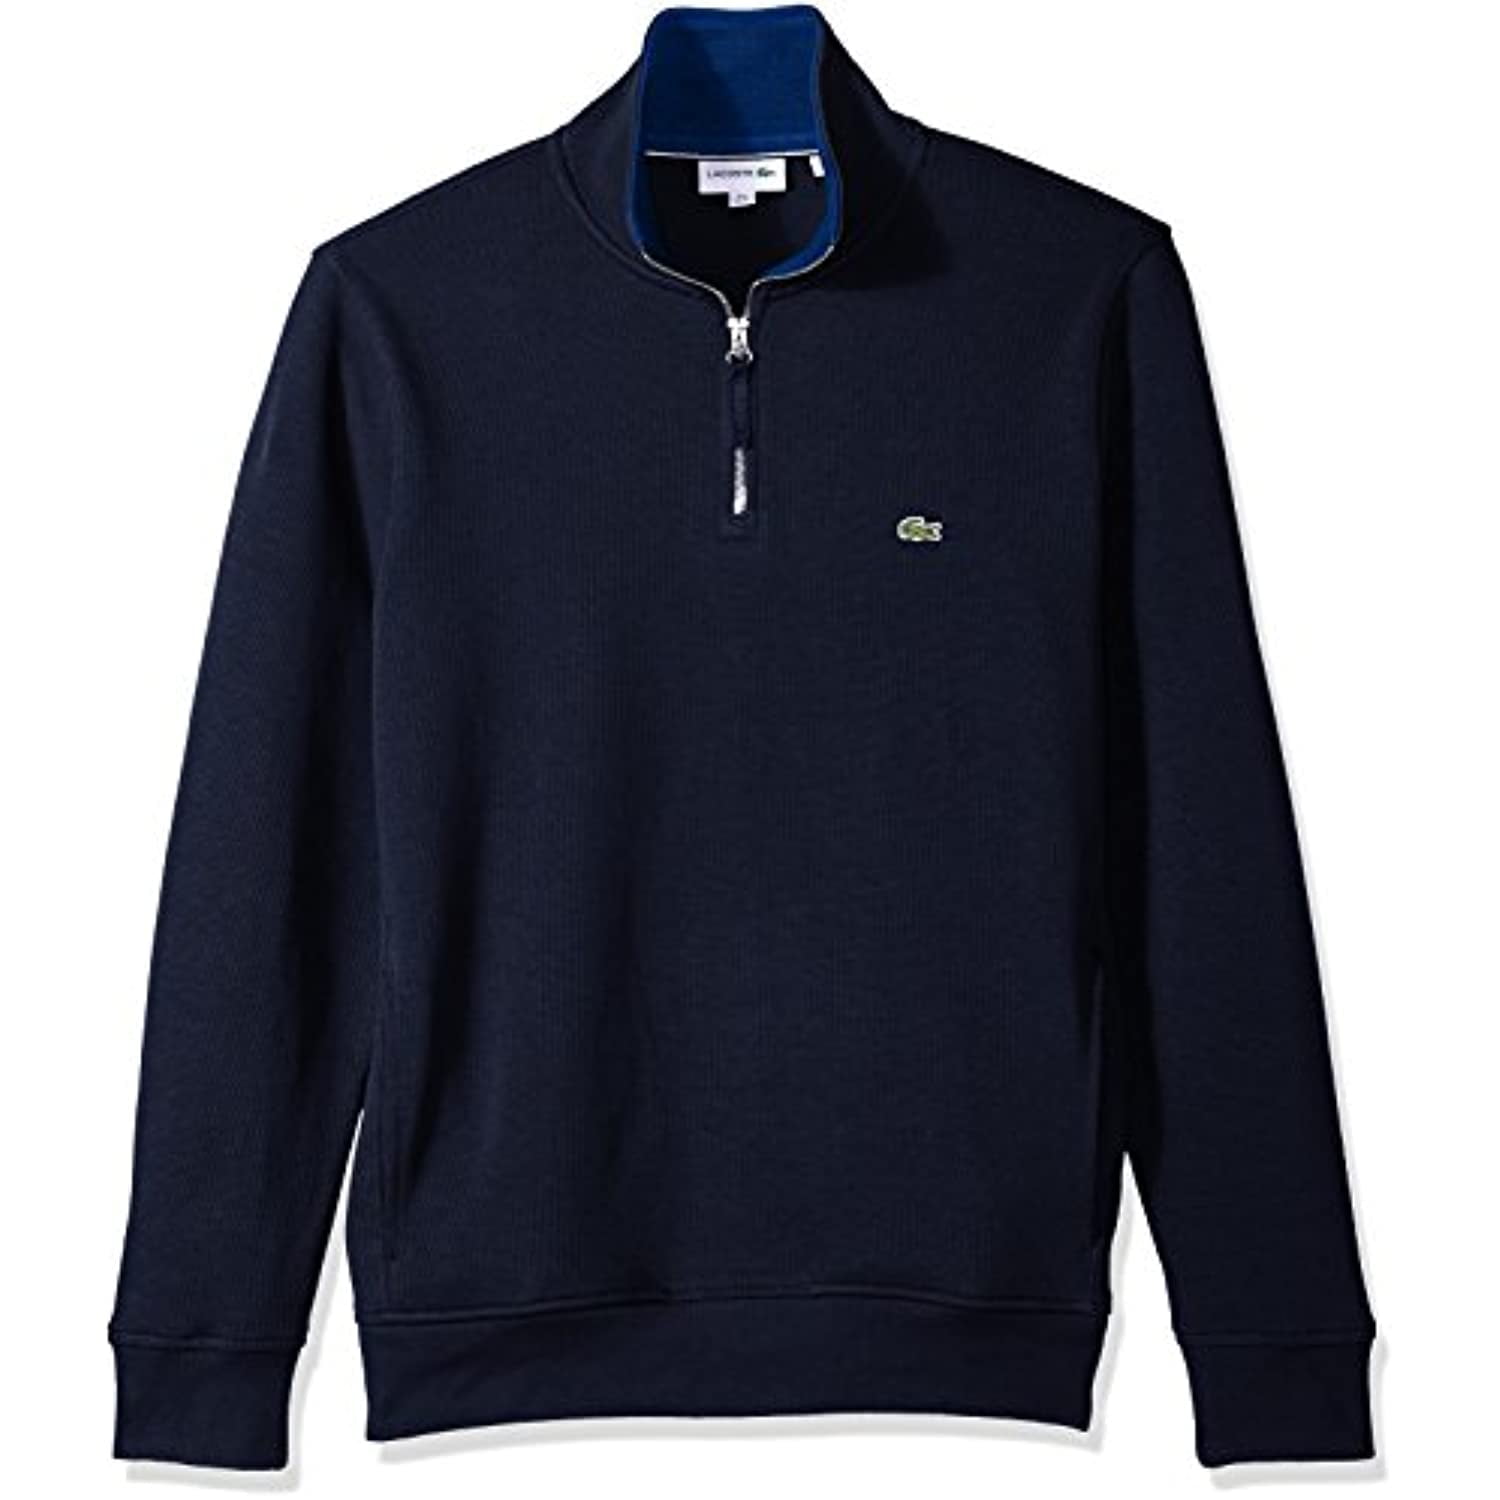 Lacoste Men's Long Sleeve 1/4 Zip Interlock Cotele Sweatshirt, Navy Small - Walmart.com